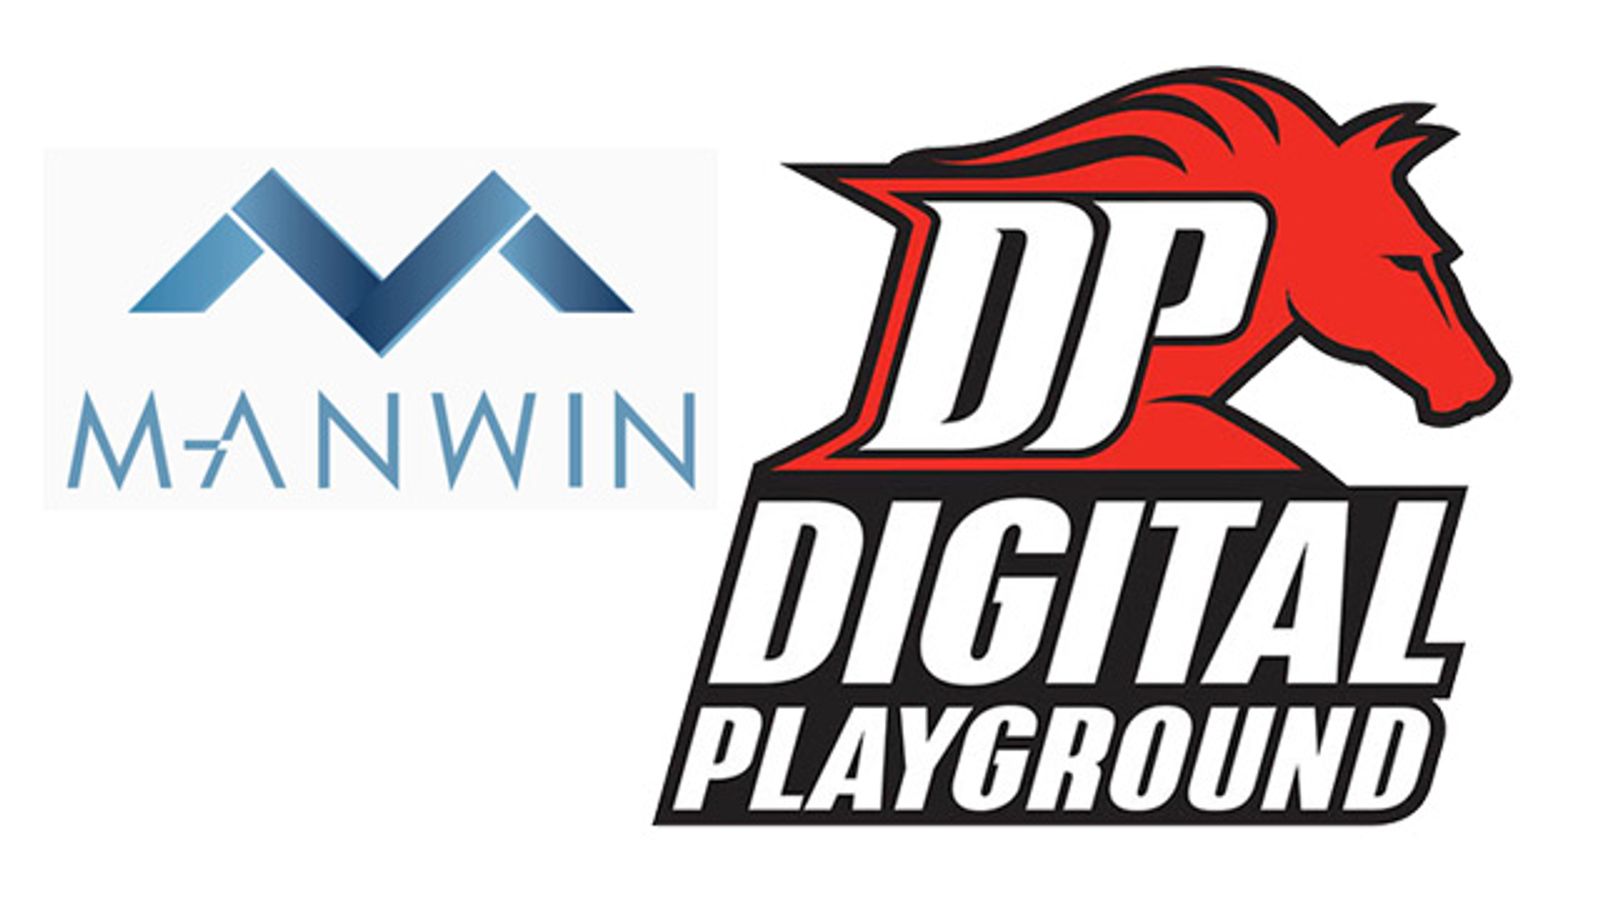 Manwin Acquires Digital Playground